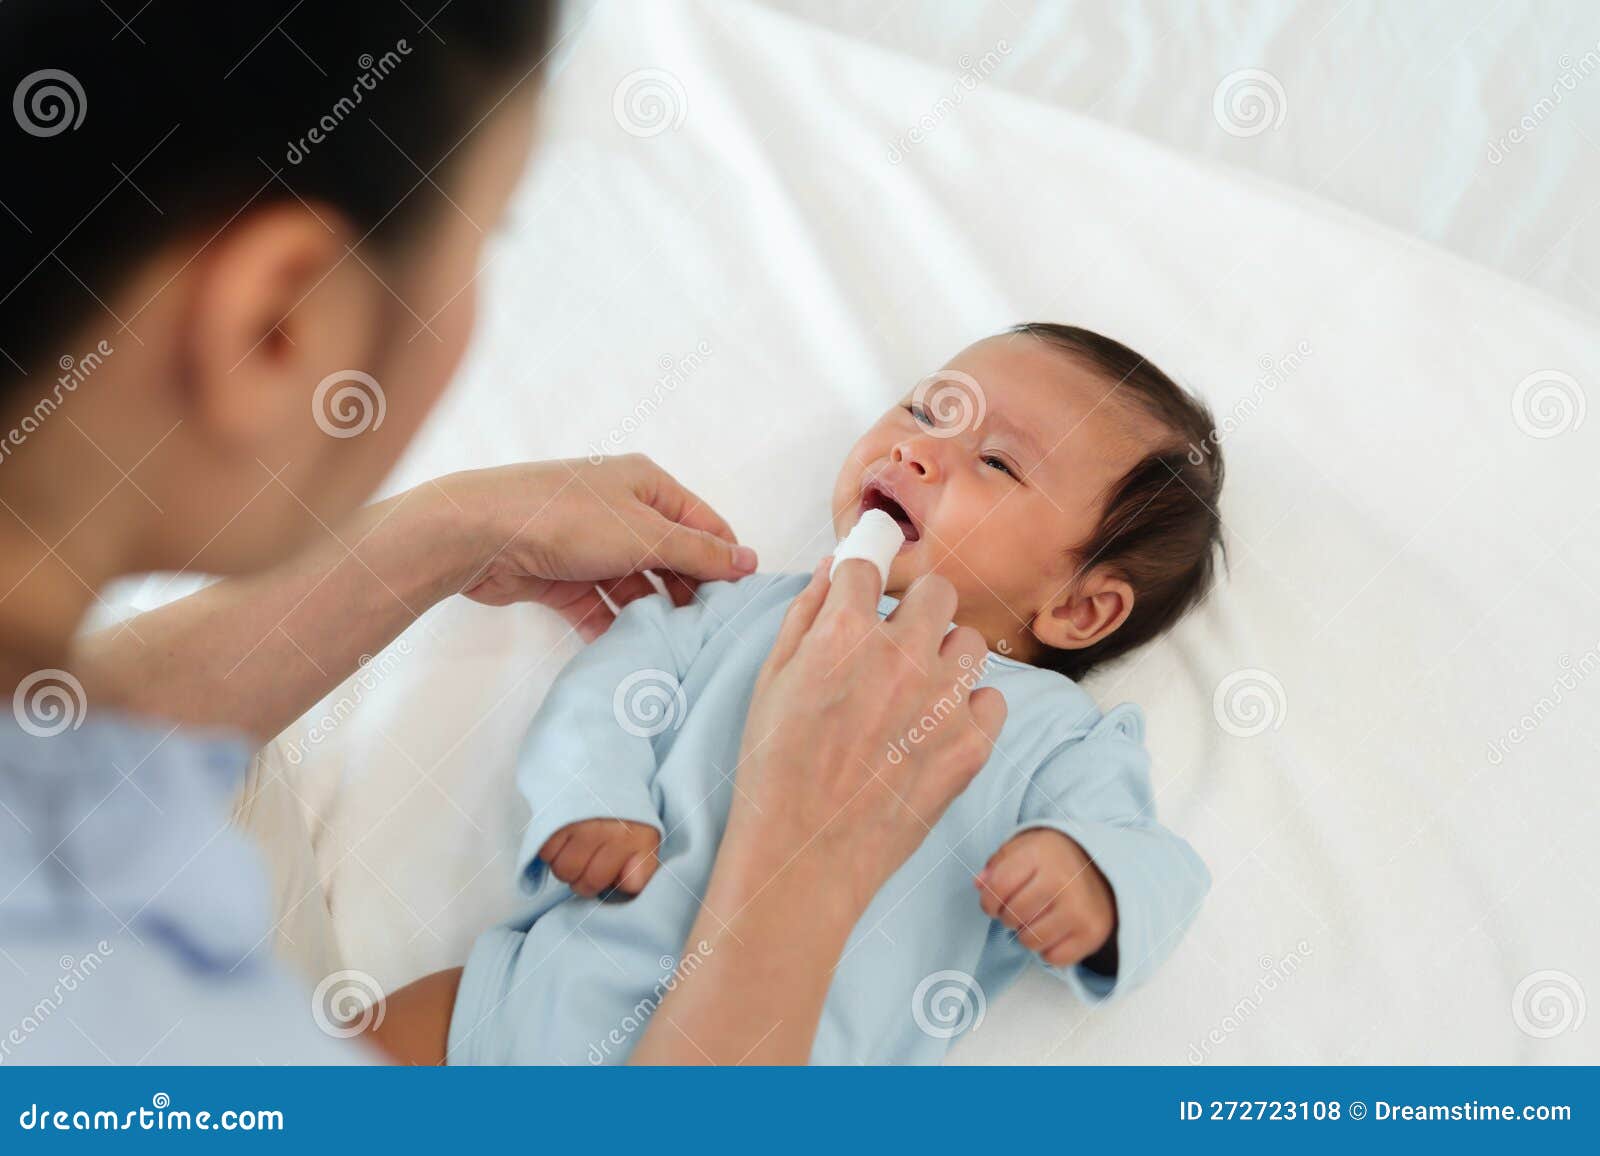 Cómo limpiar la lengua de un bebé recién nacido?